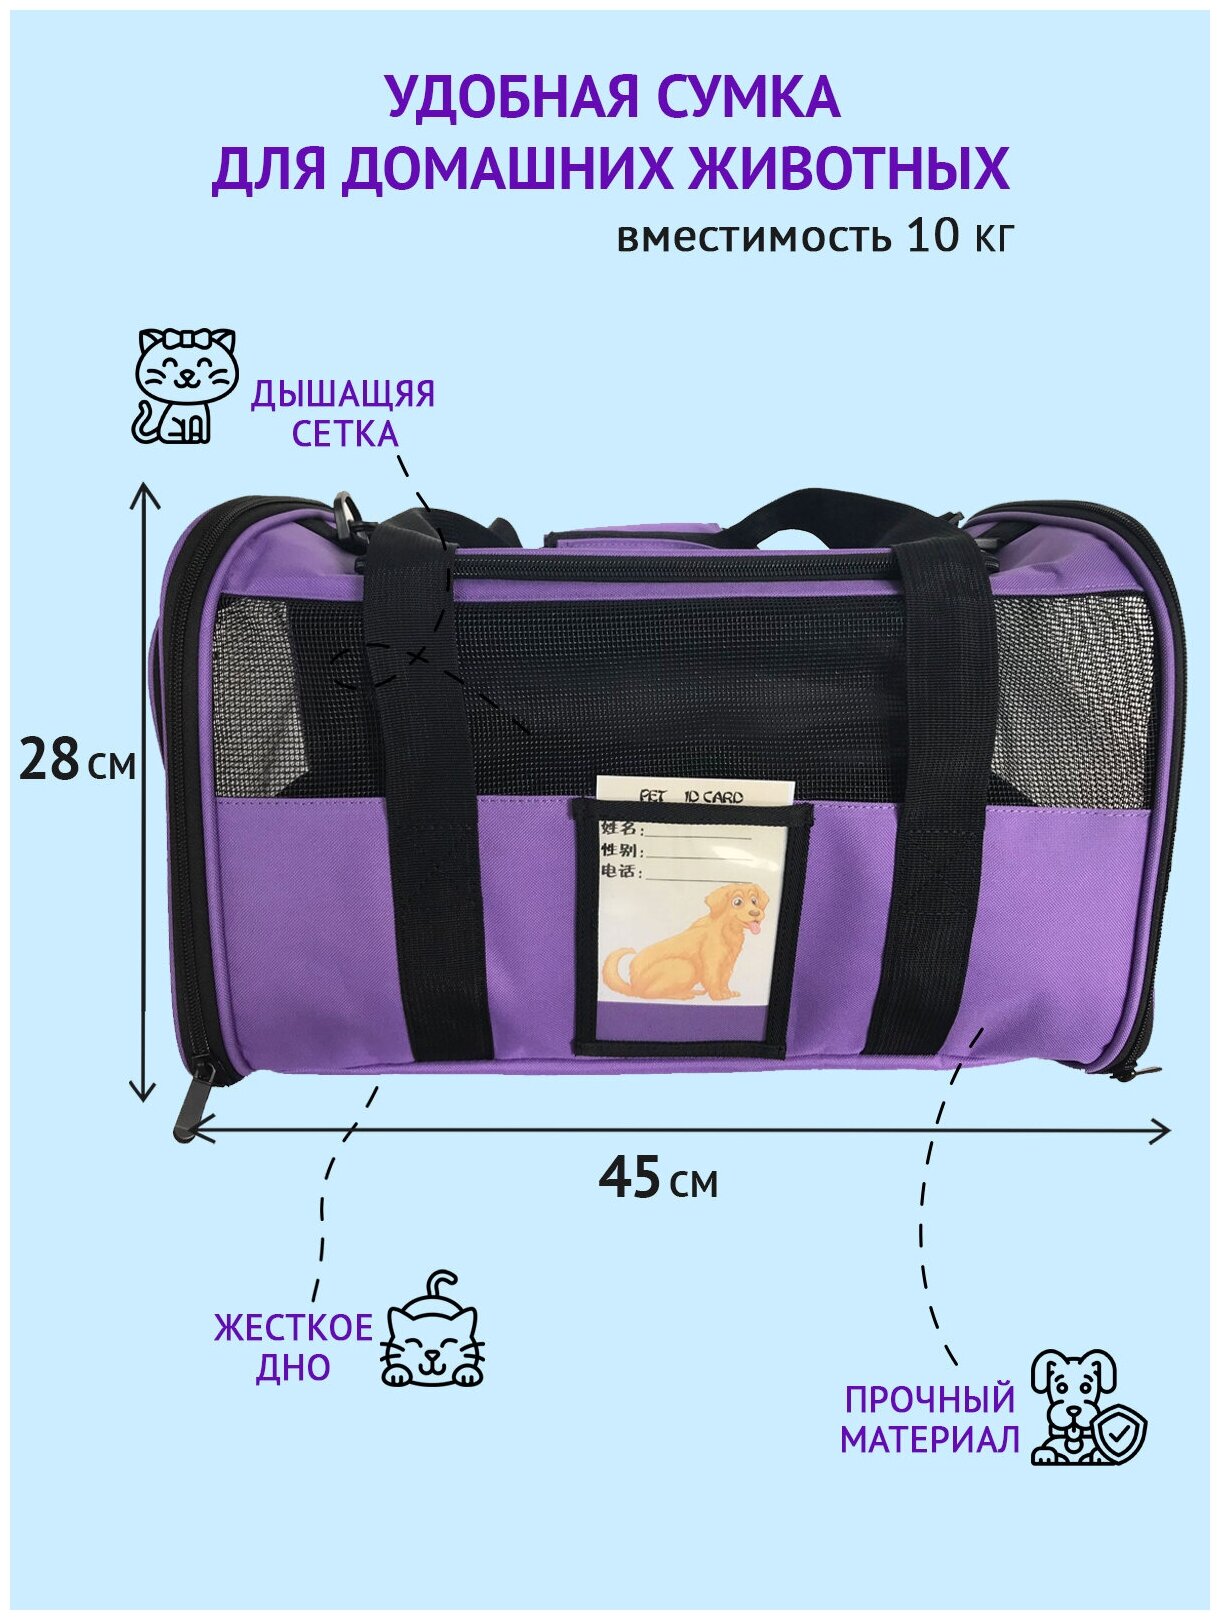 Переноска для животных ZES, сетчатая сумка для переноски кошек и собак мелких пород, размер 45х28х28, фиолетового цвета - фотография № 2